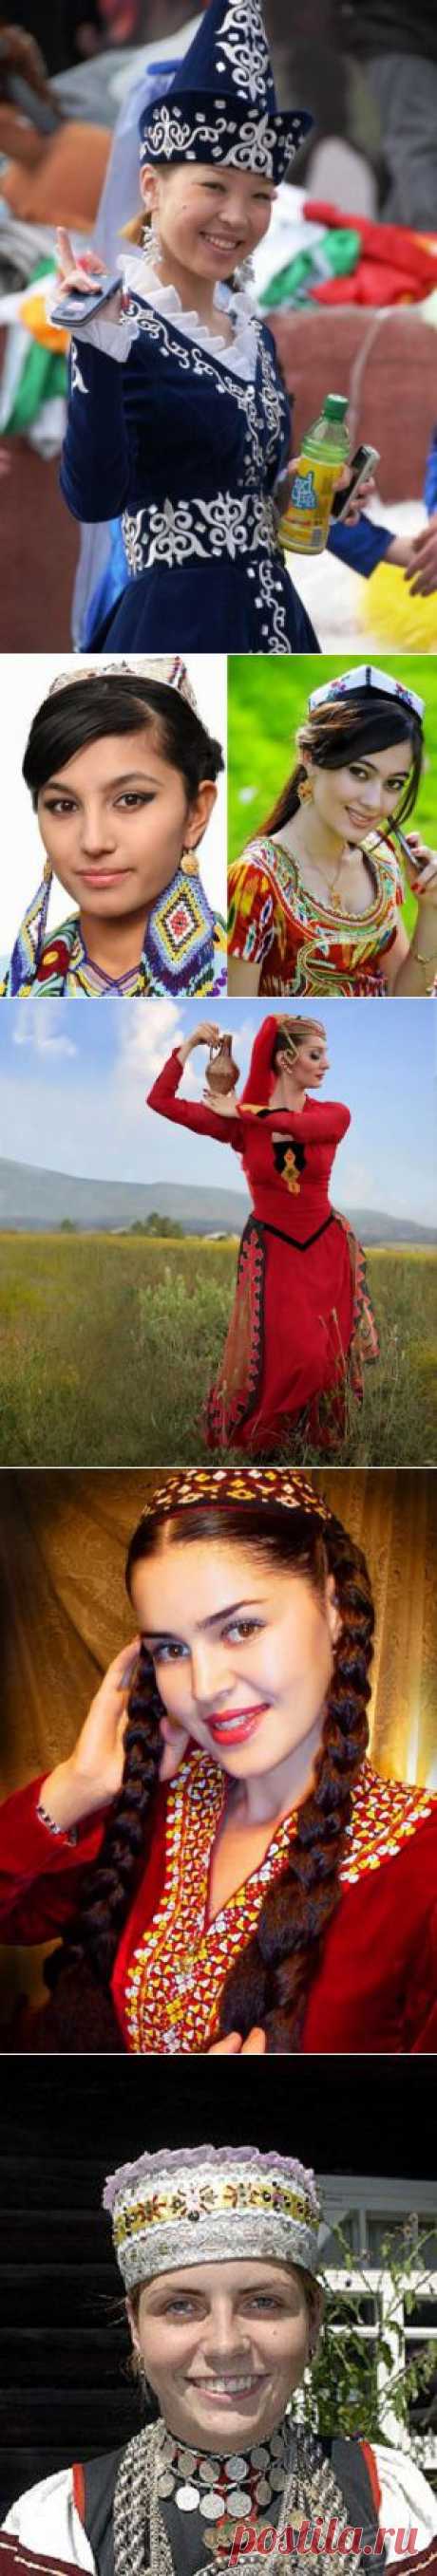 Девушки в национальных костюмах республик бывшего СССР | Мир Фотографии